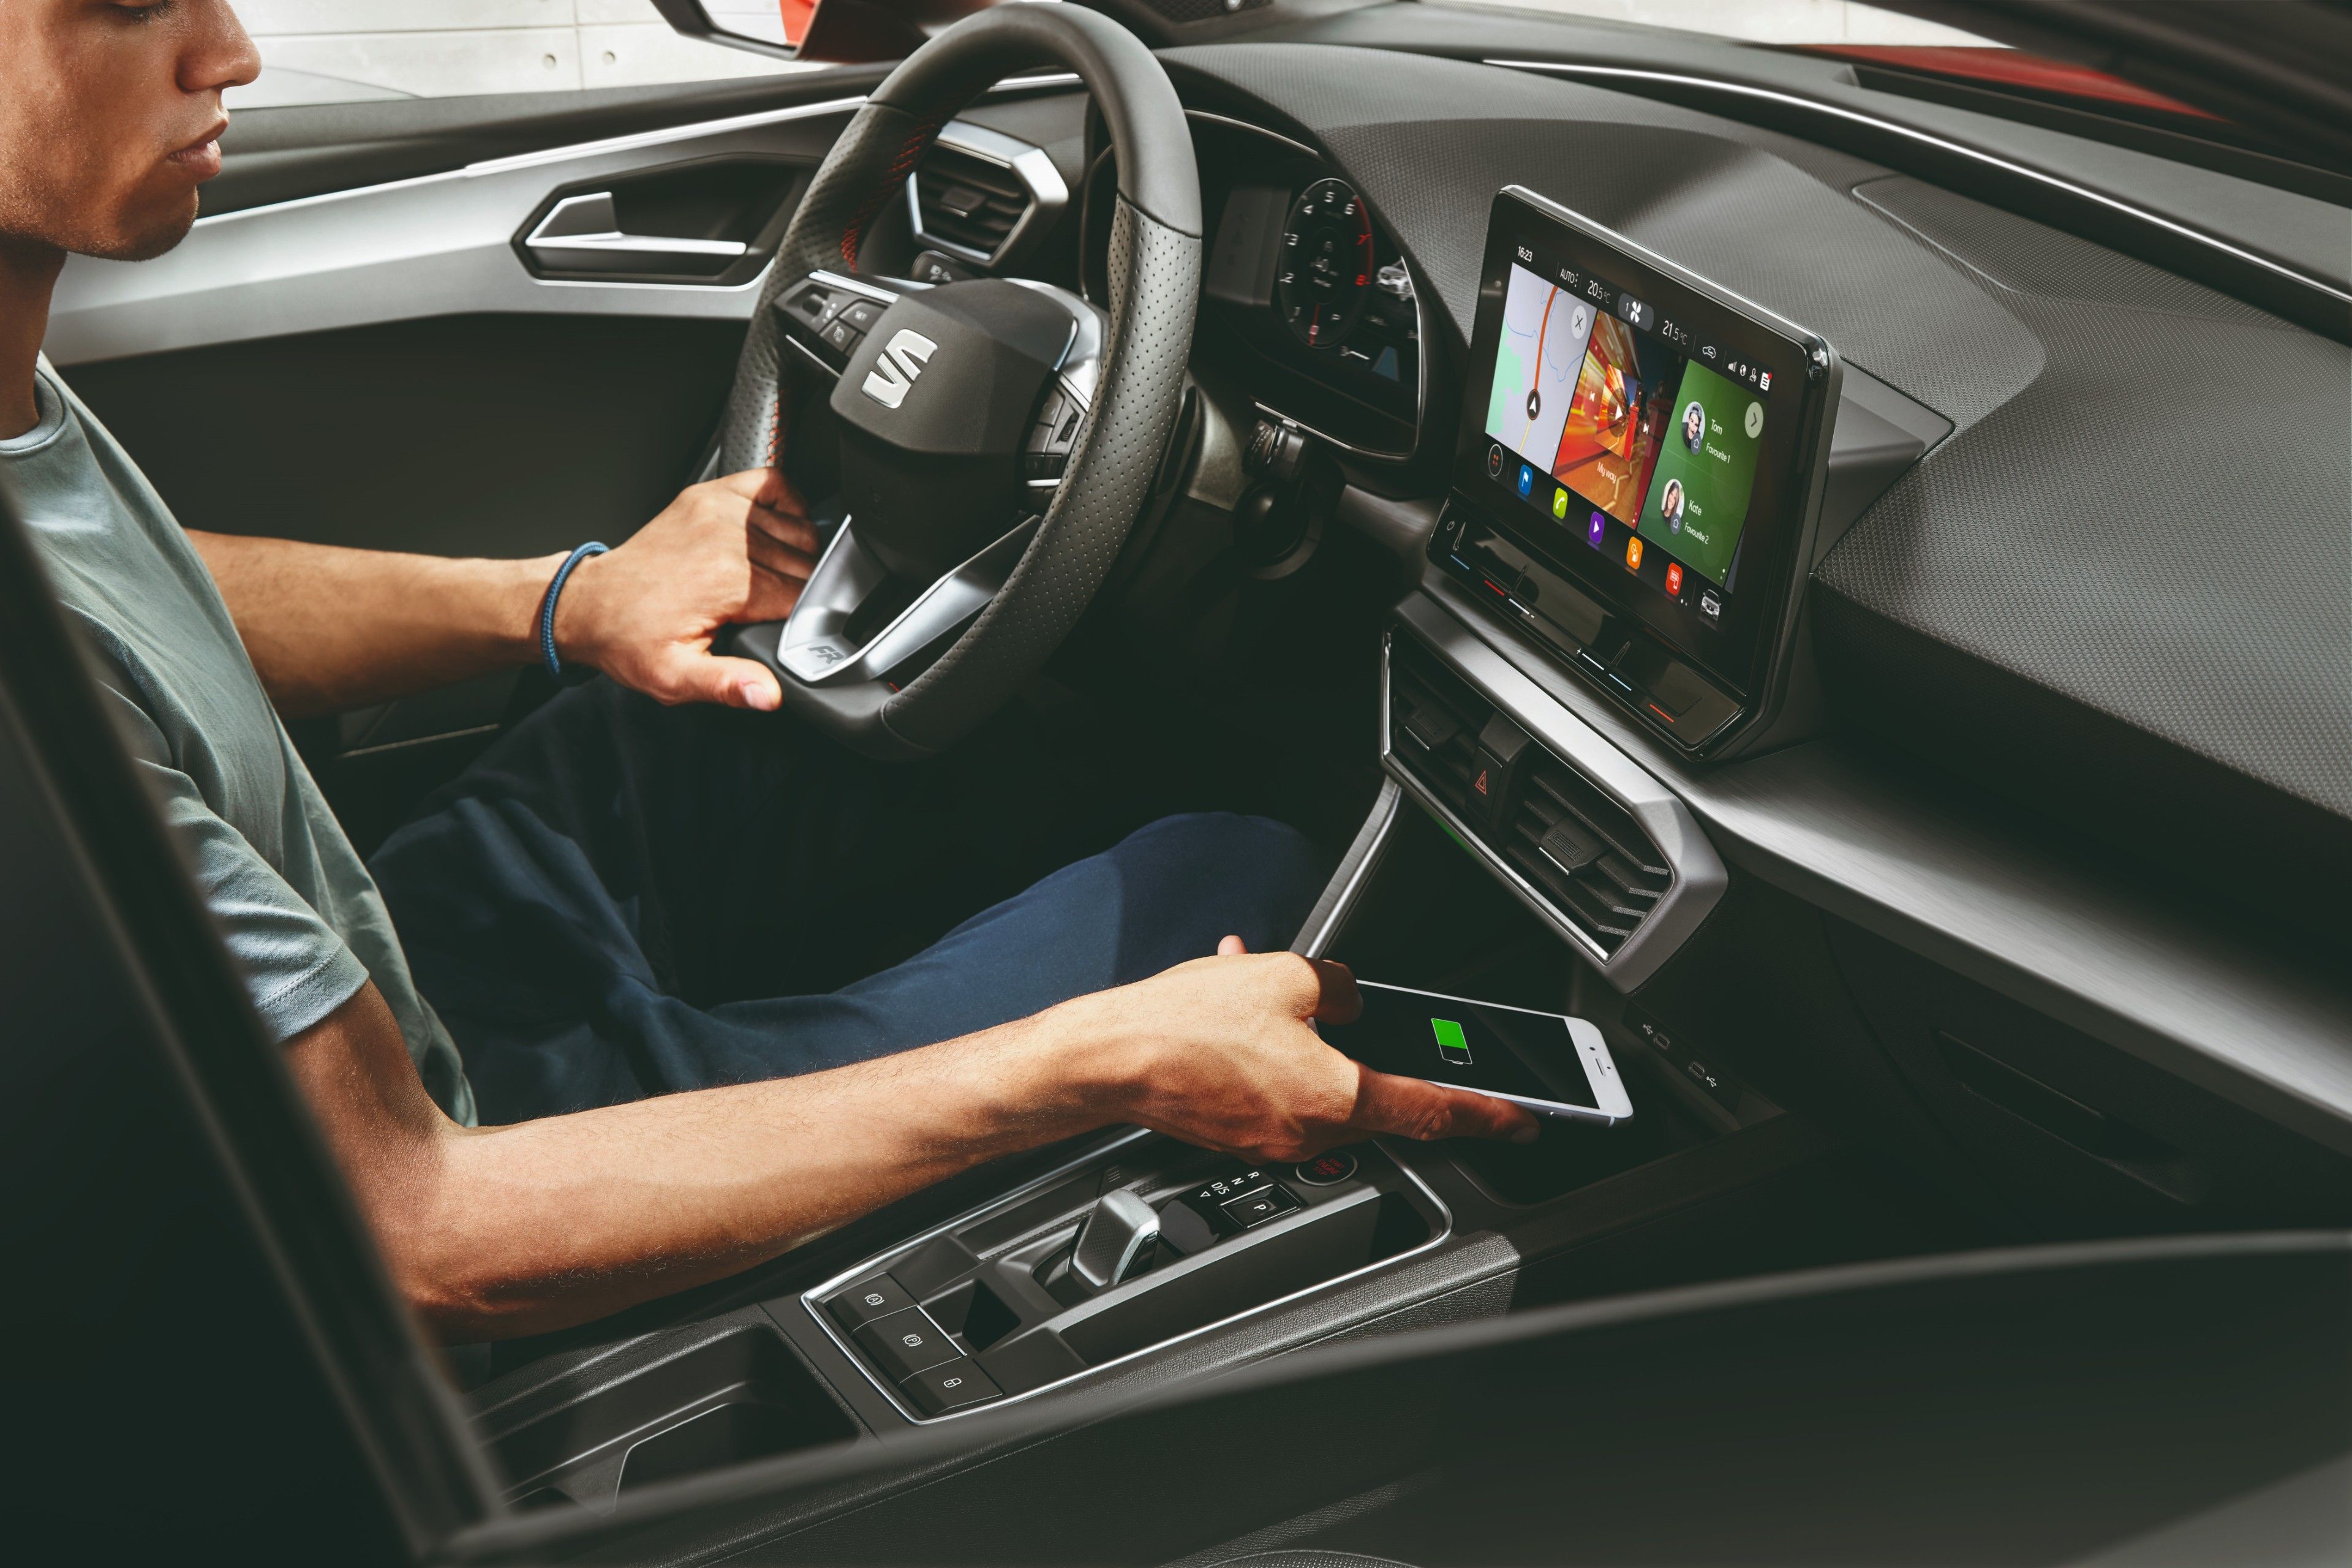 Volkswagen Golf 8 o Seat León 2020: ¿cuál tiene mejor conectividad?